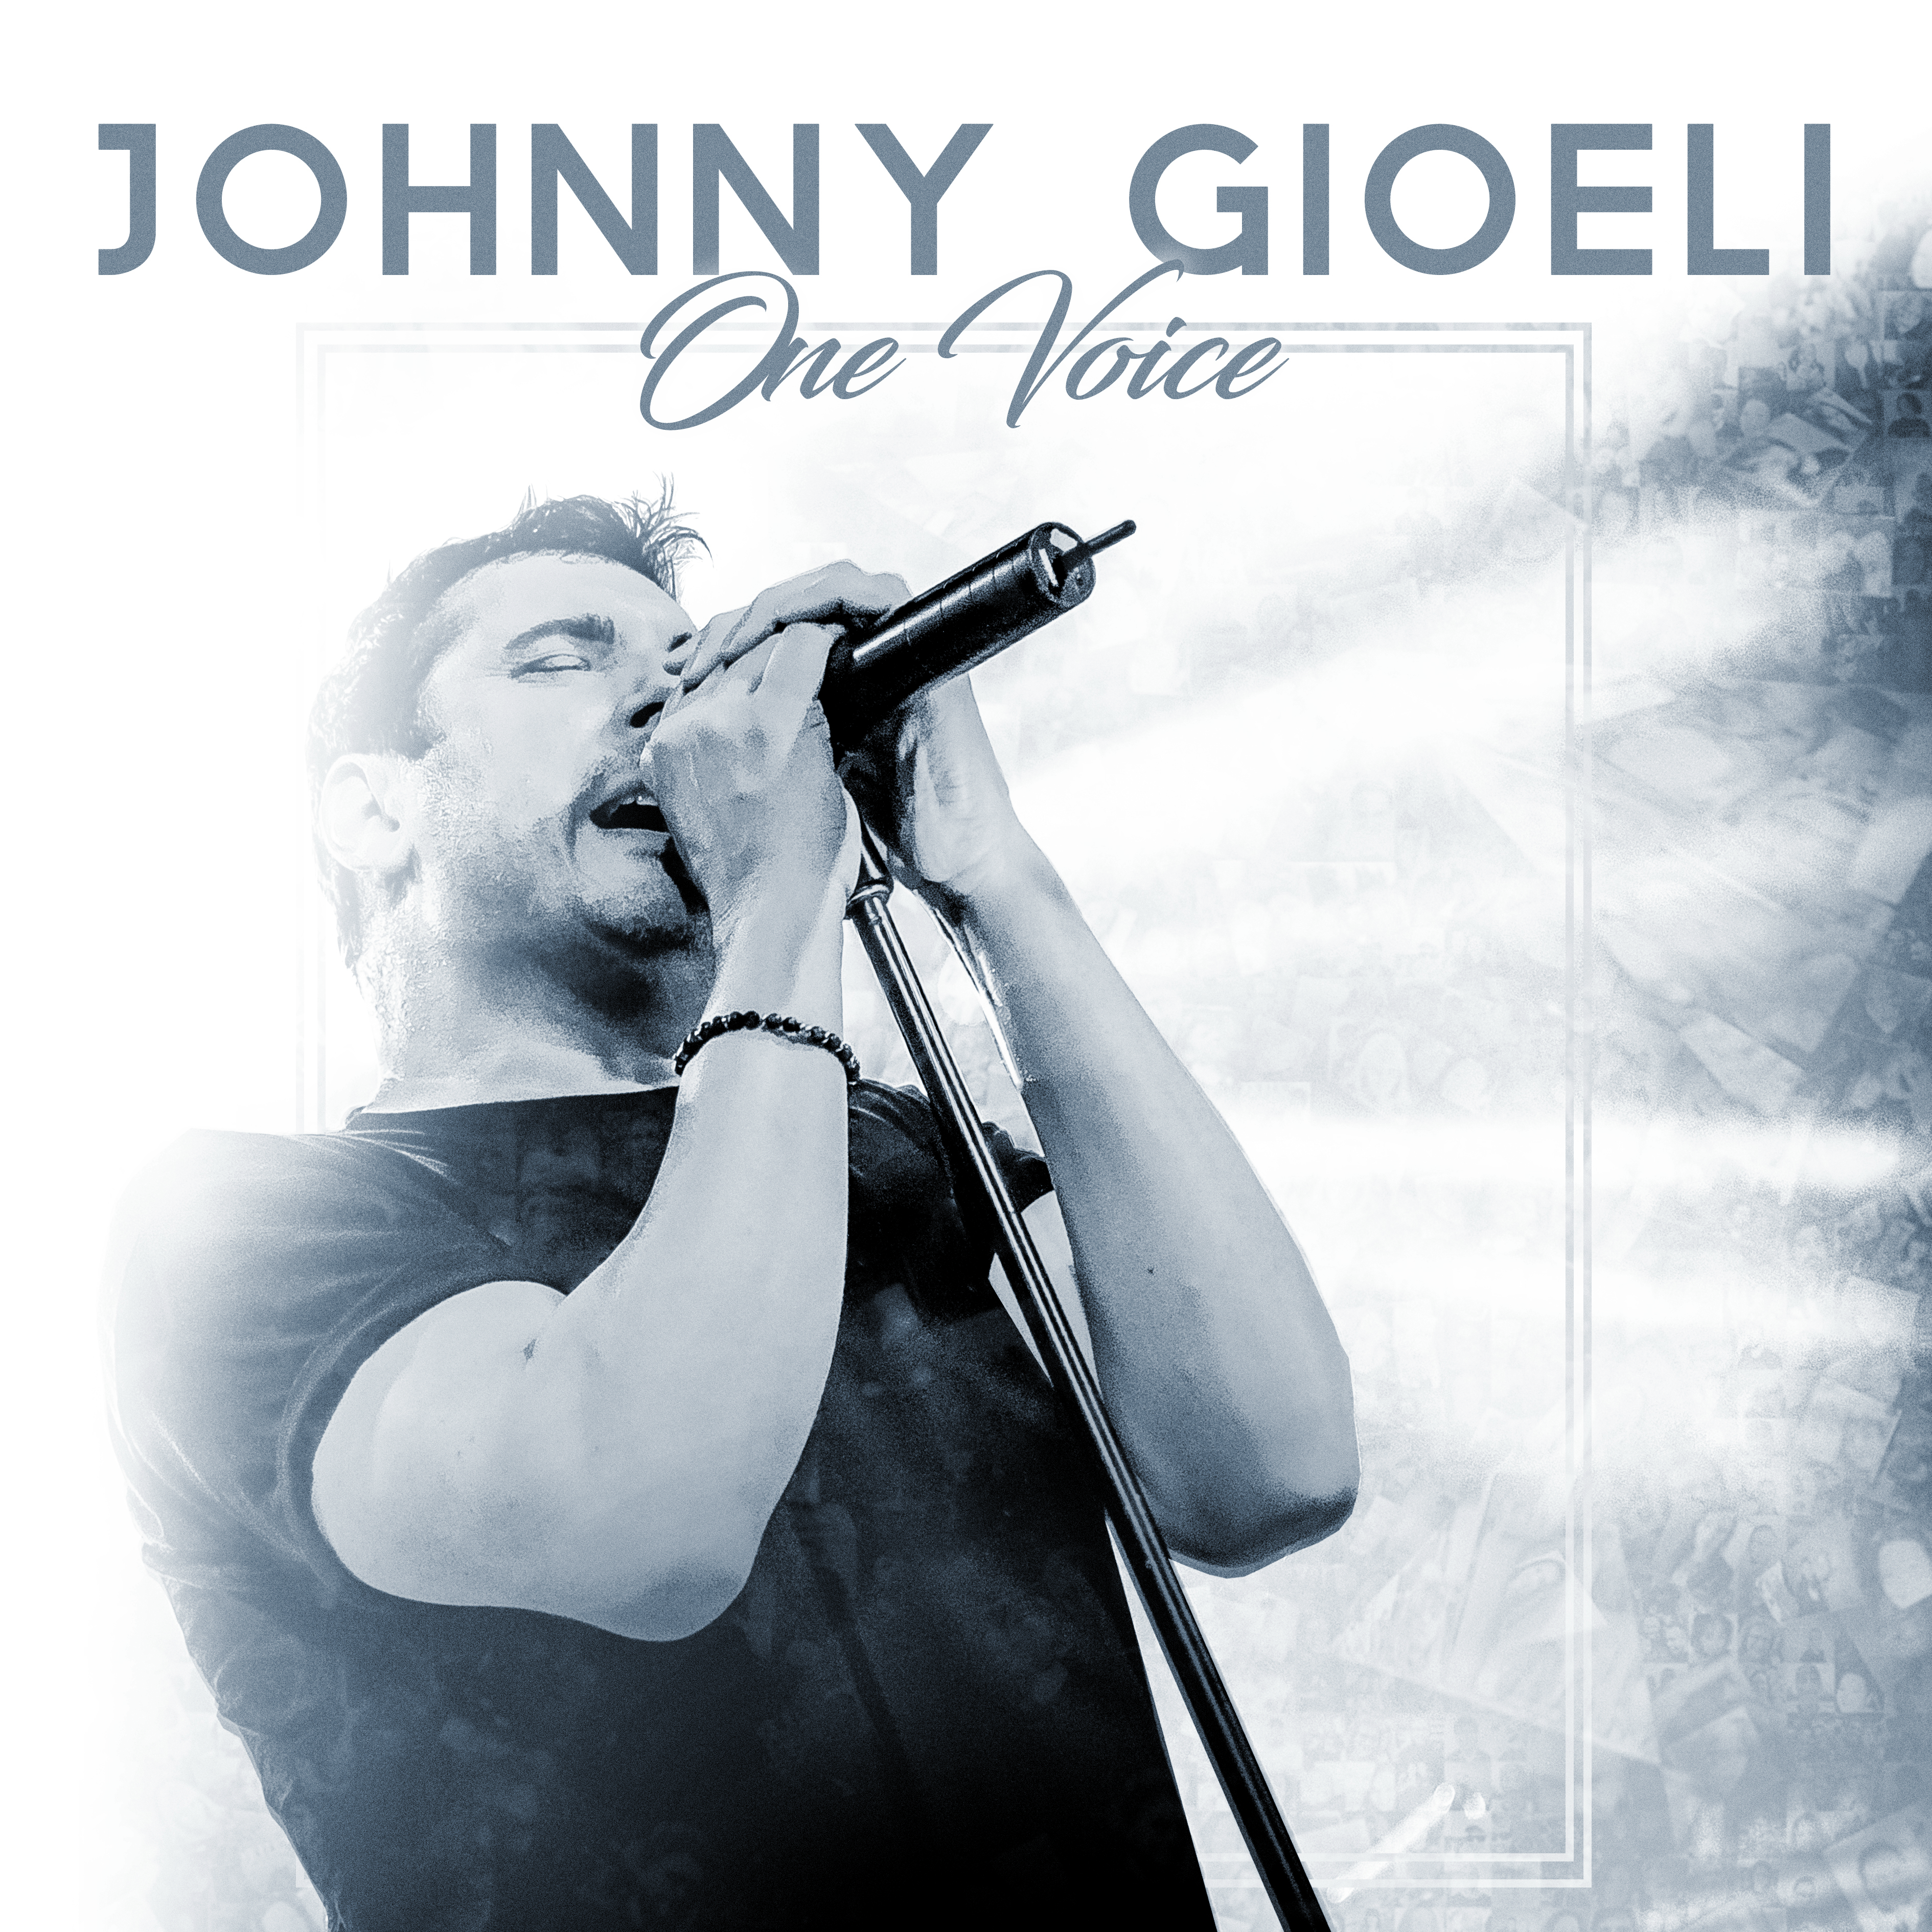 Johnny Gioeli - One Voice - CD